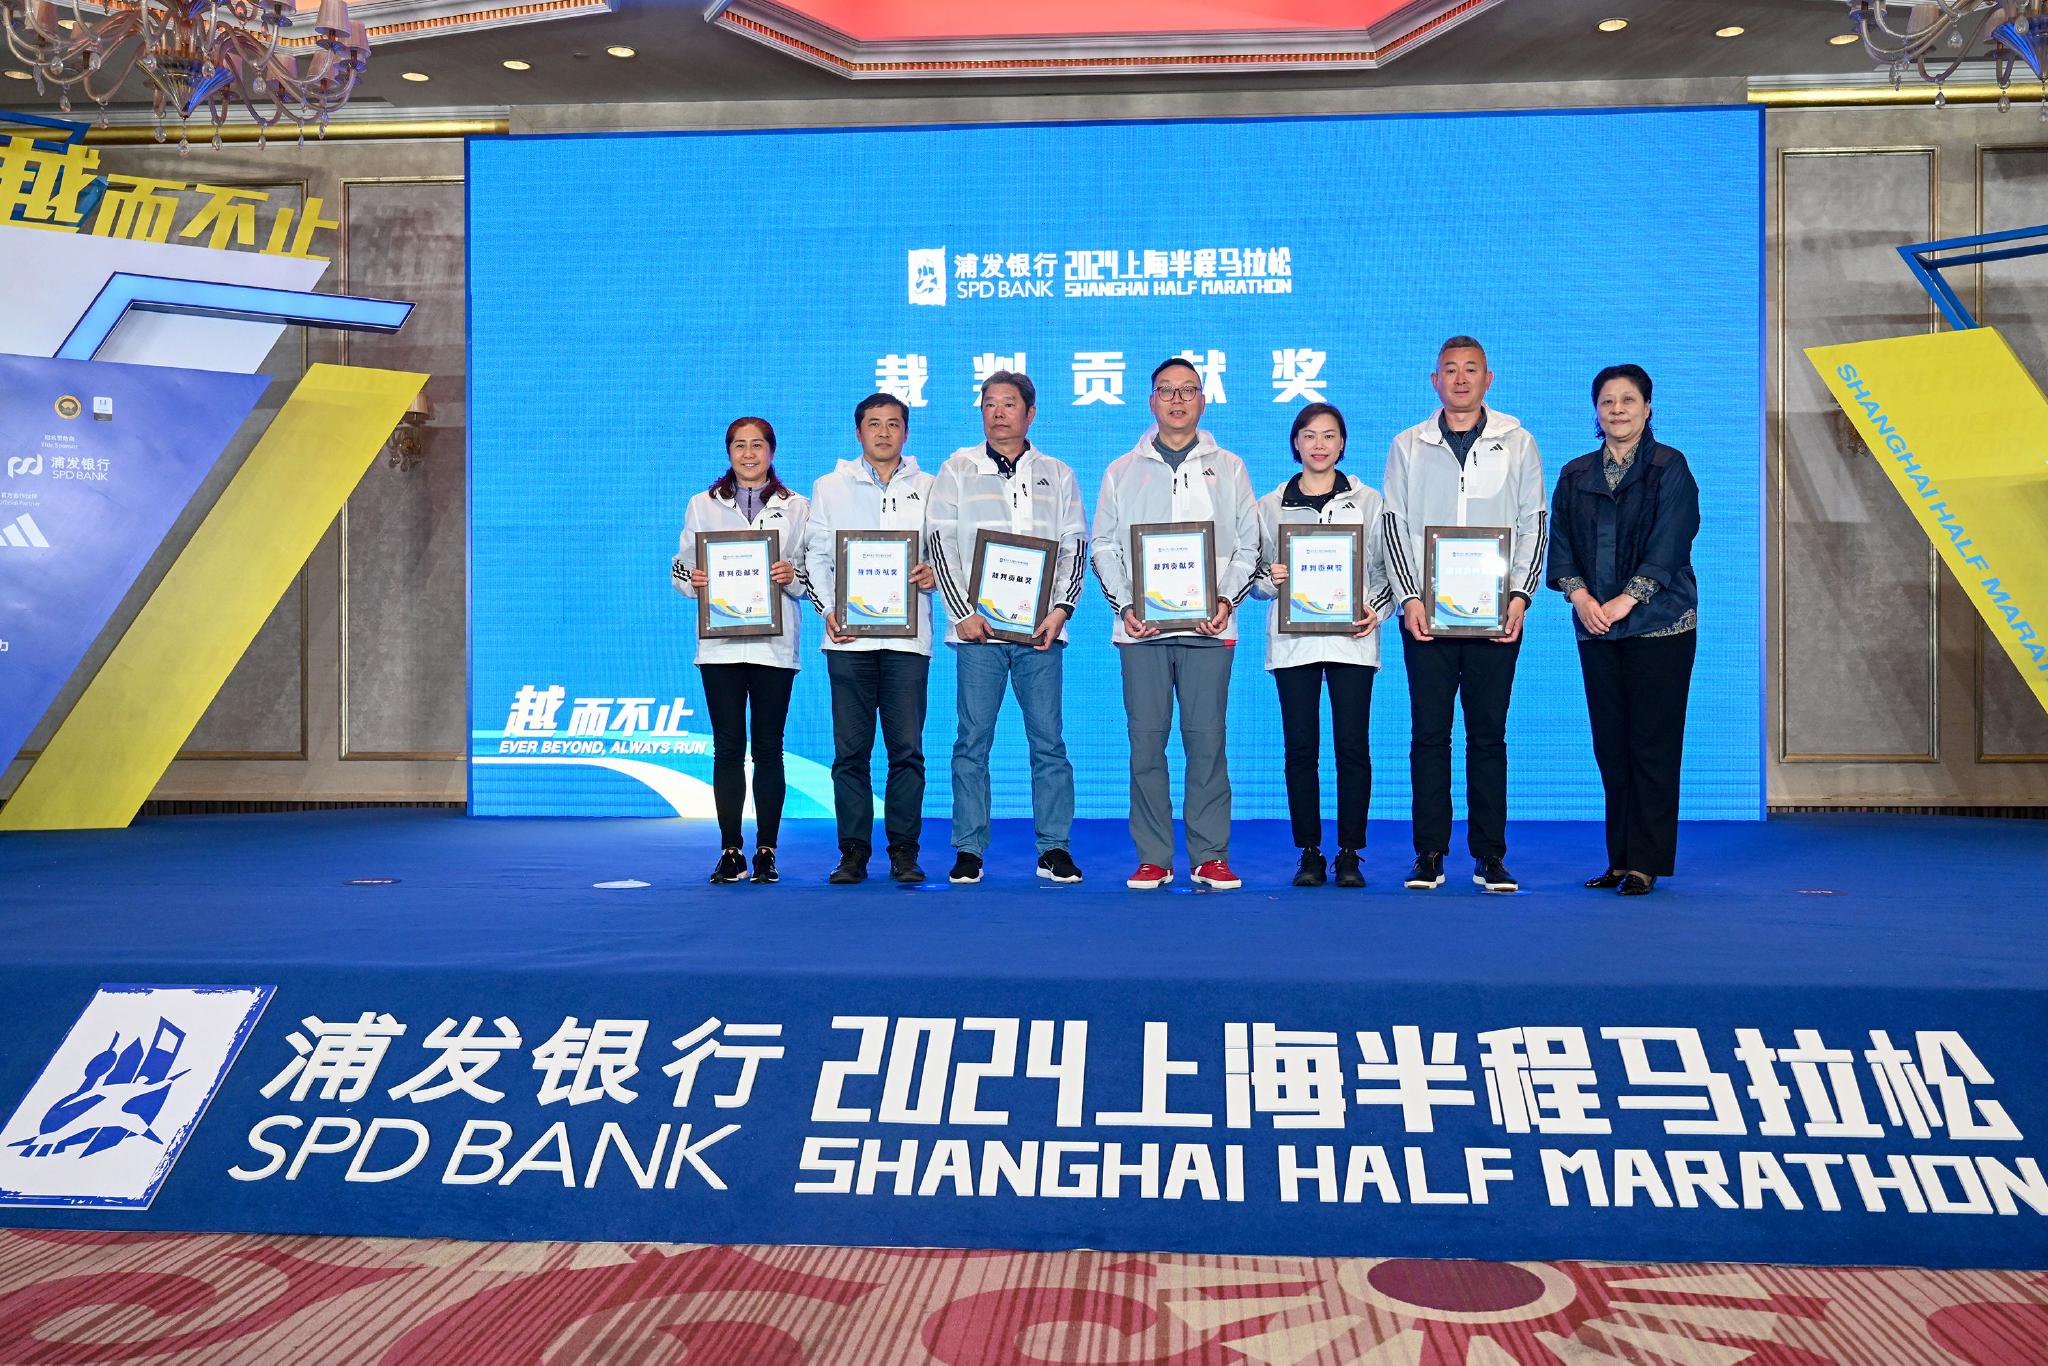 上海半马在赛事发布会上将一部分时间留给裁判和志愿者，表达致敬。